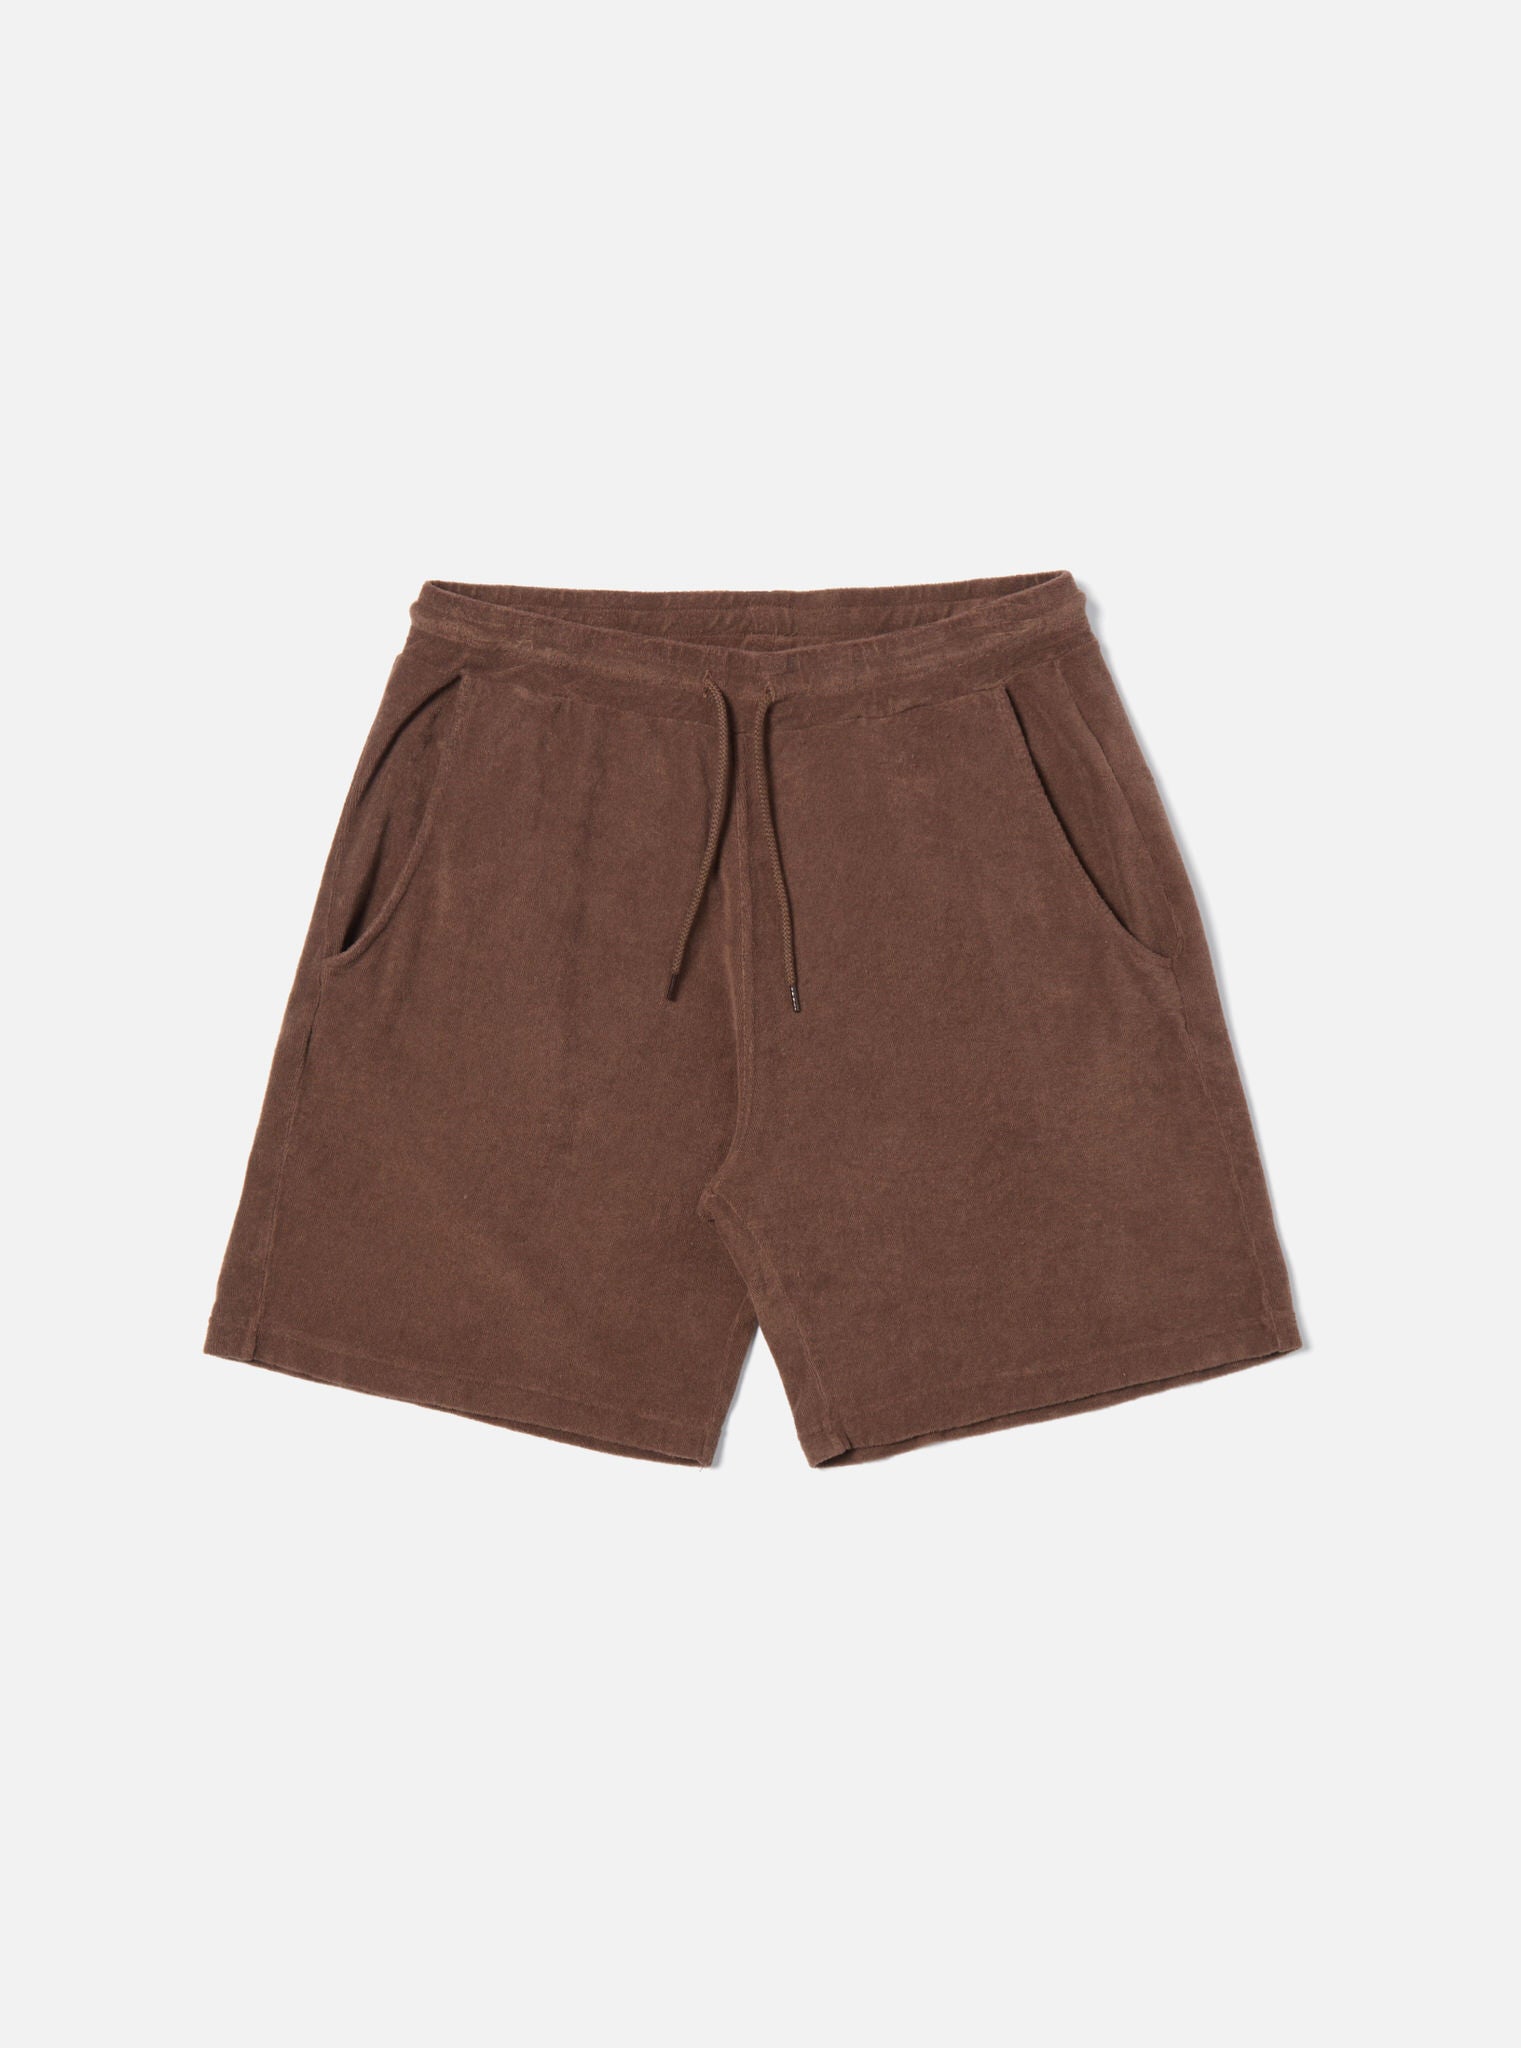 Brown Shorts - Etsy